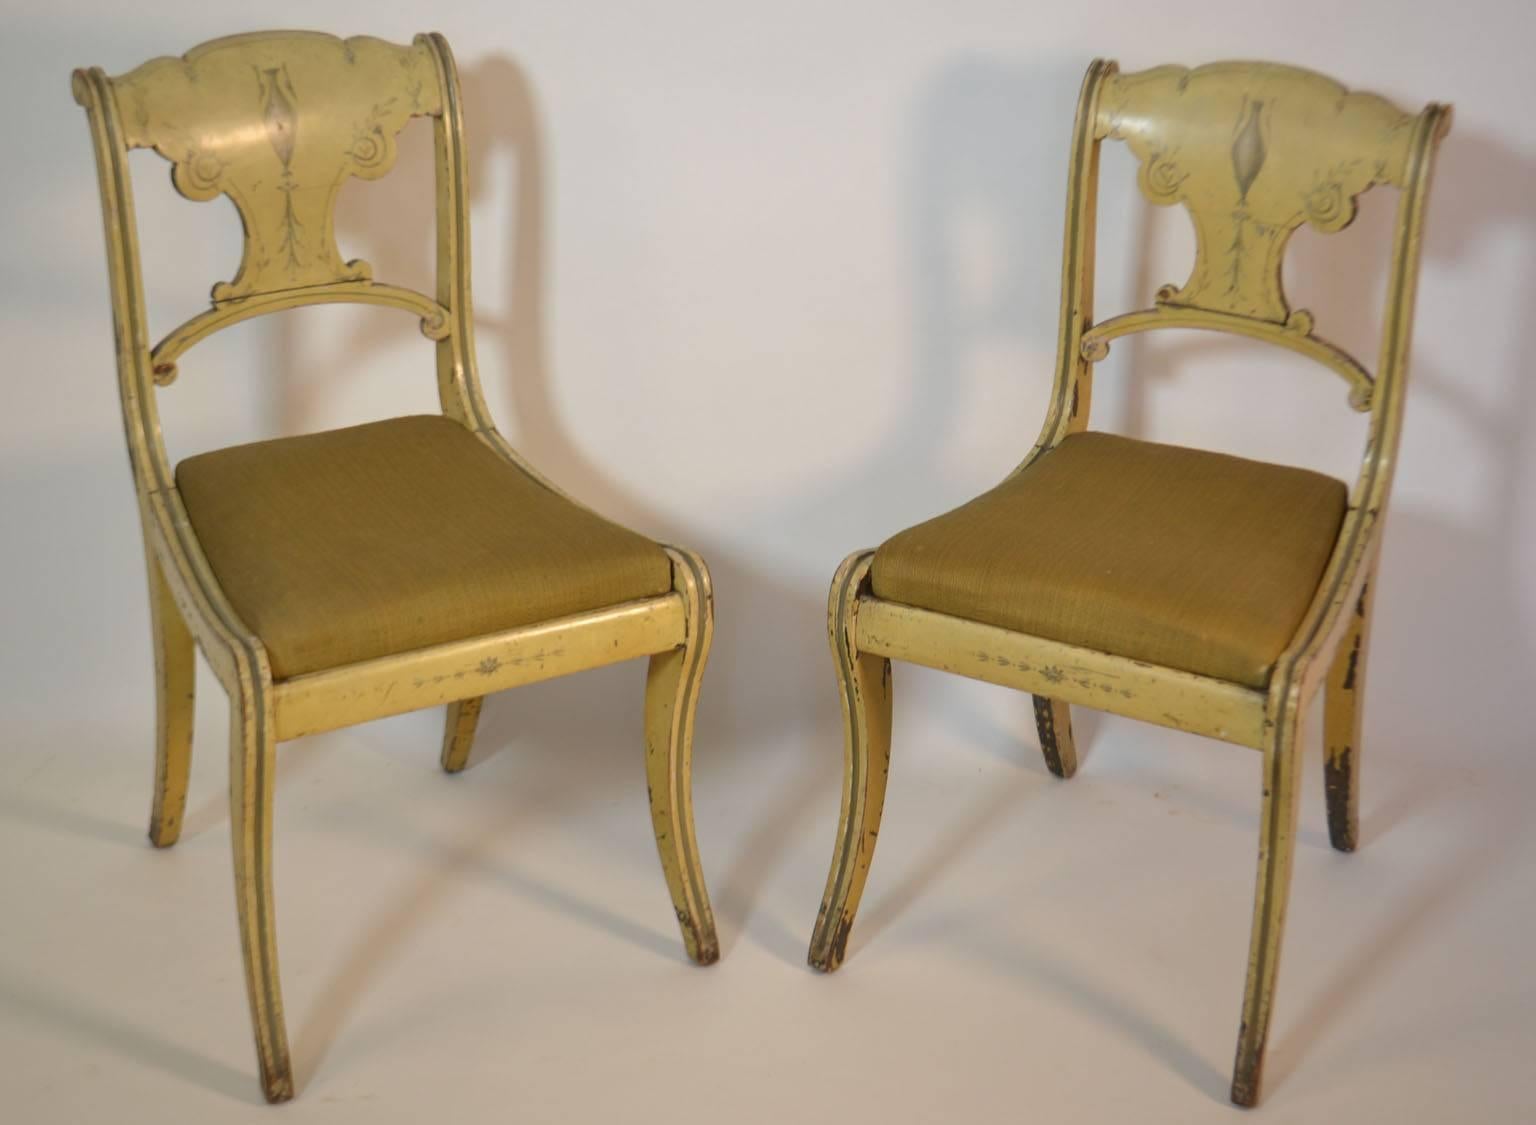 Ensemble de quatre petites chaises peintes avec une peinture de couleur moutarde.